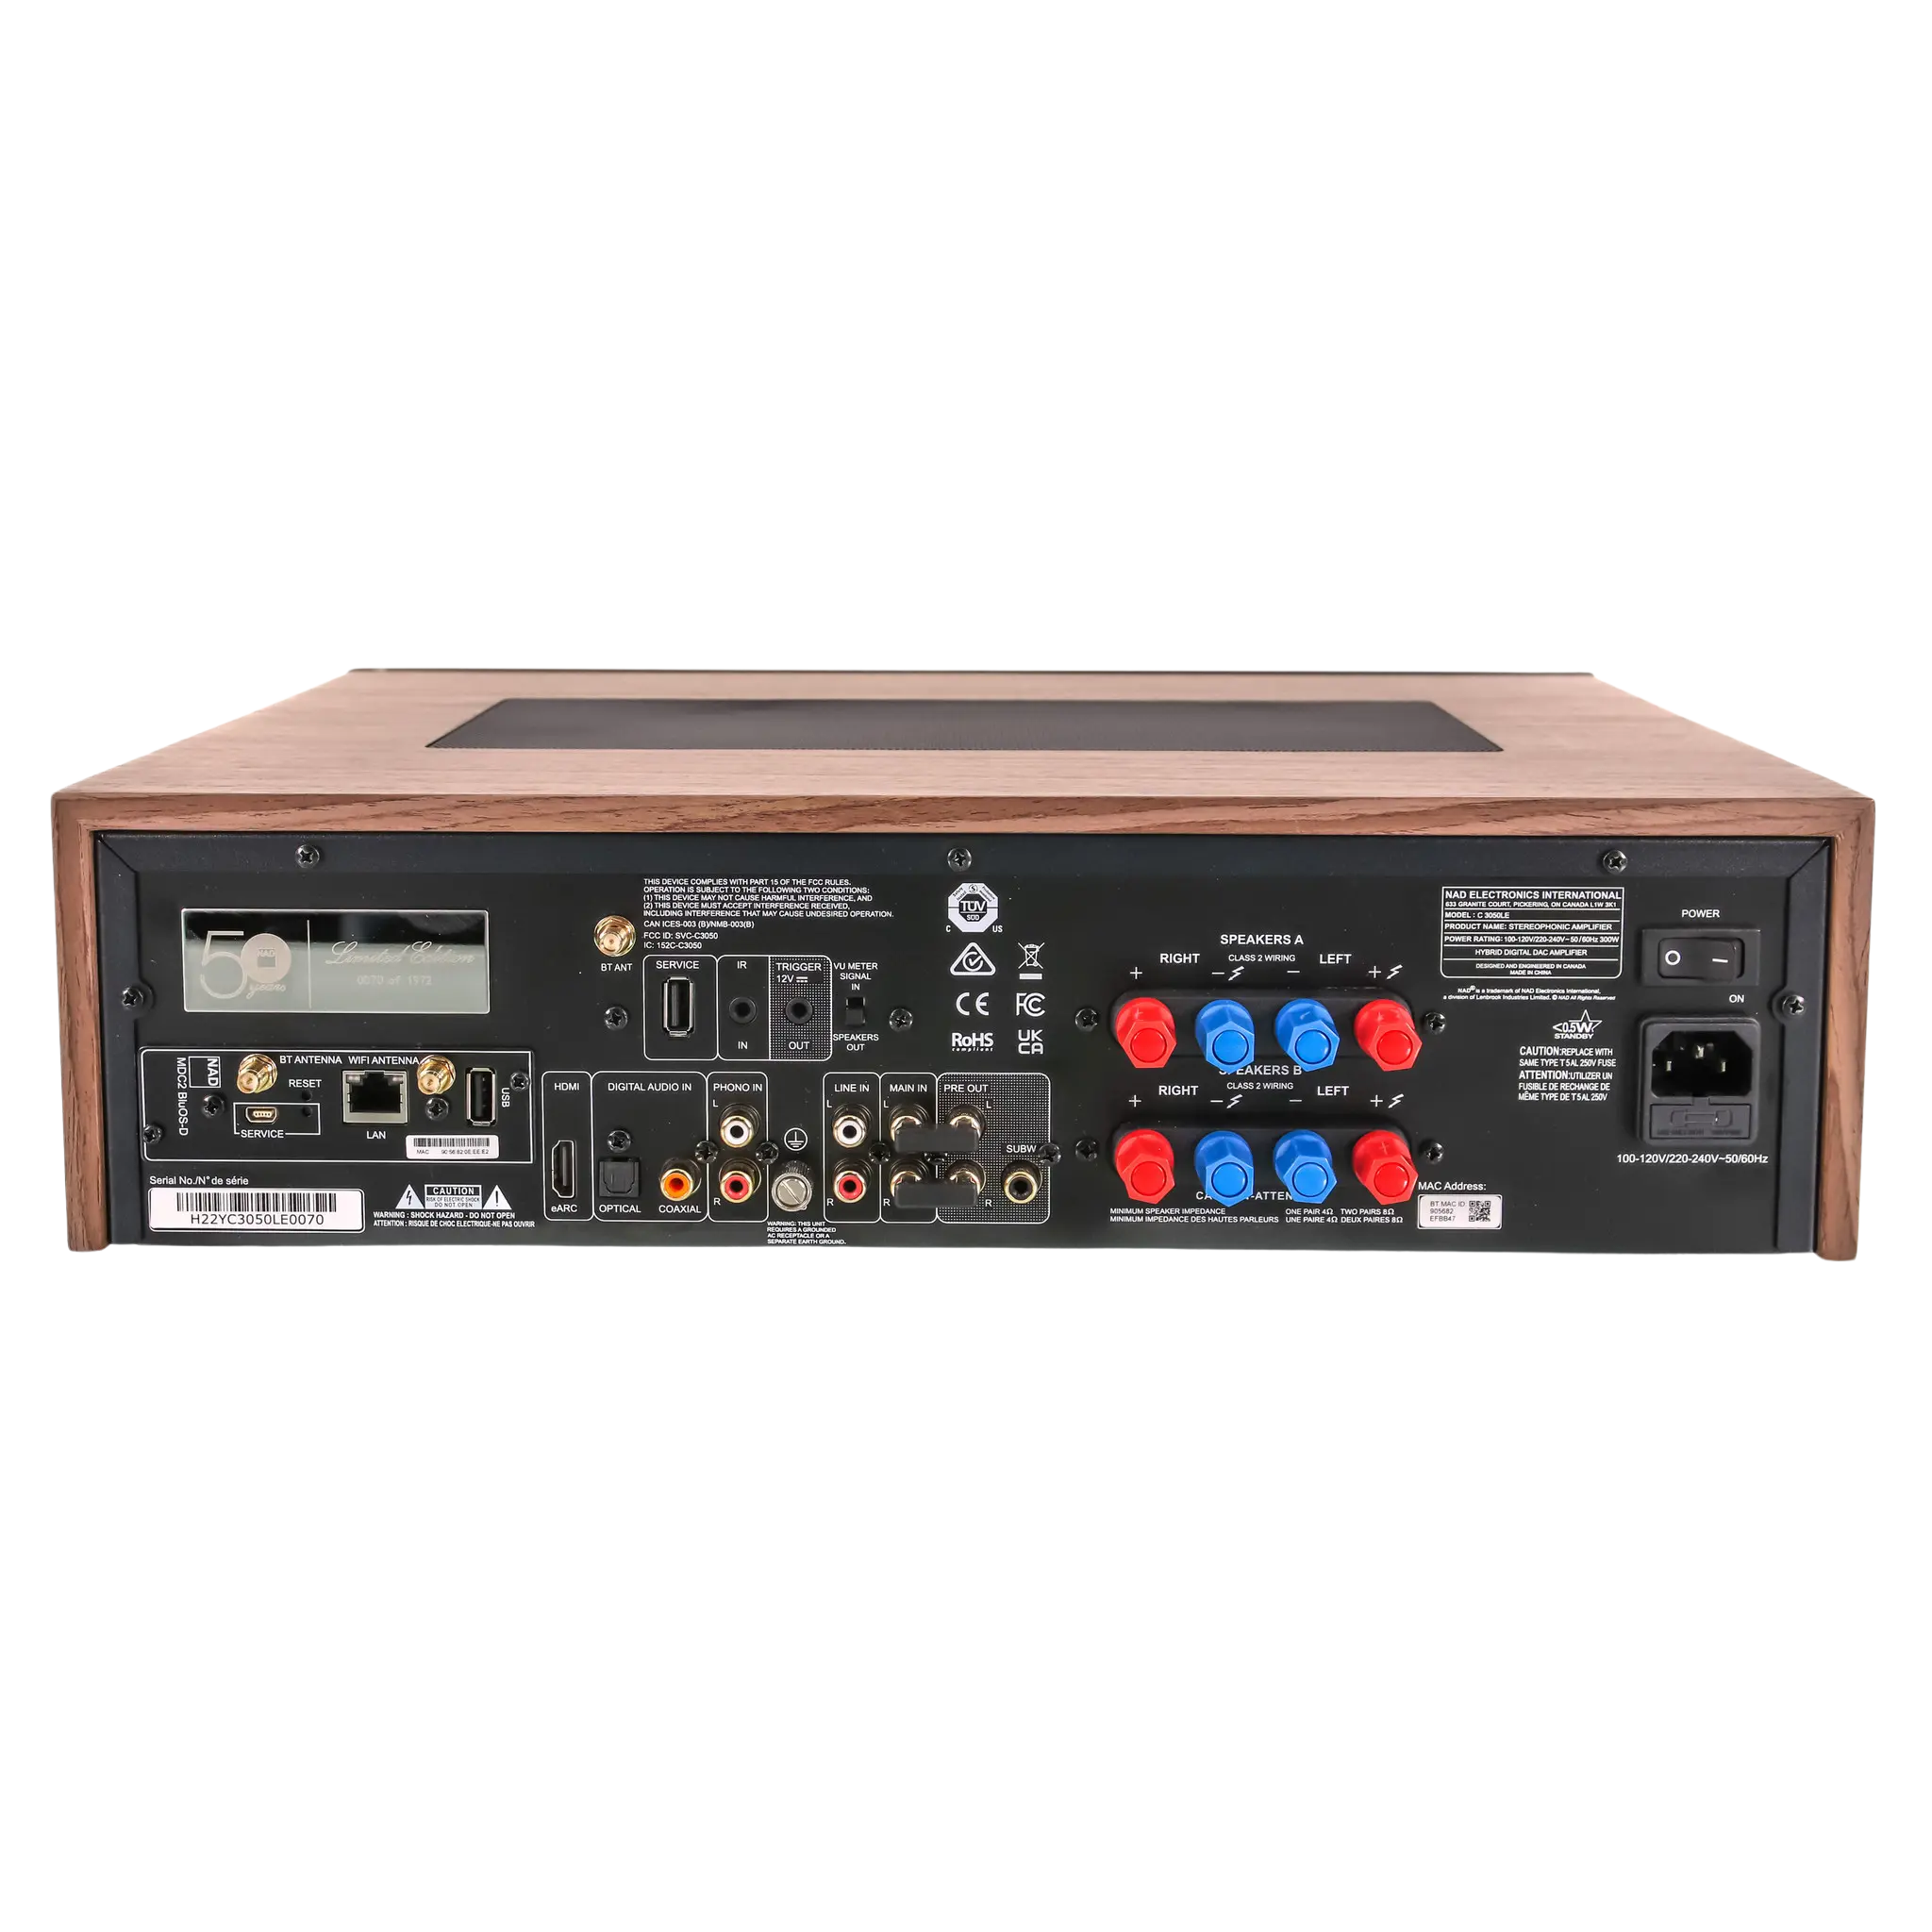 NAD C 3050 Amplificador integrado